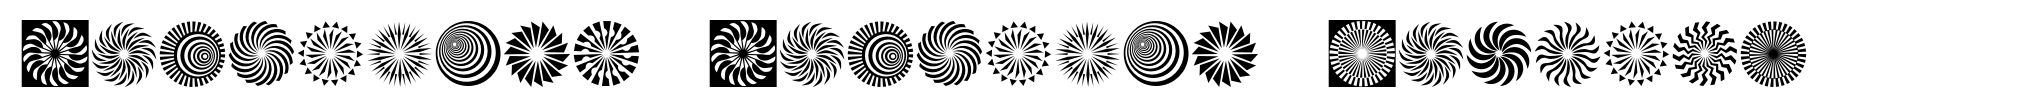 Hypnotica Hypnotic Symbols image